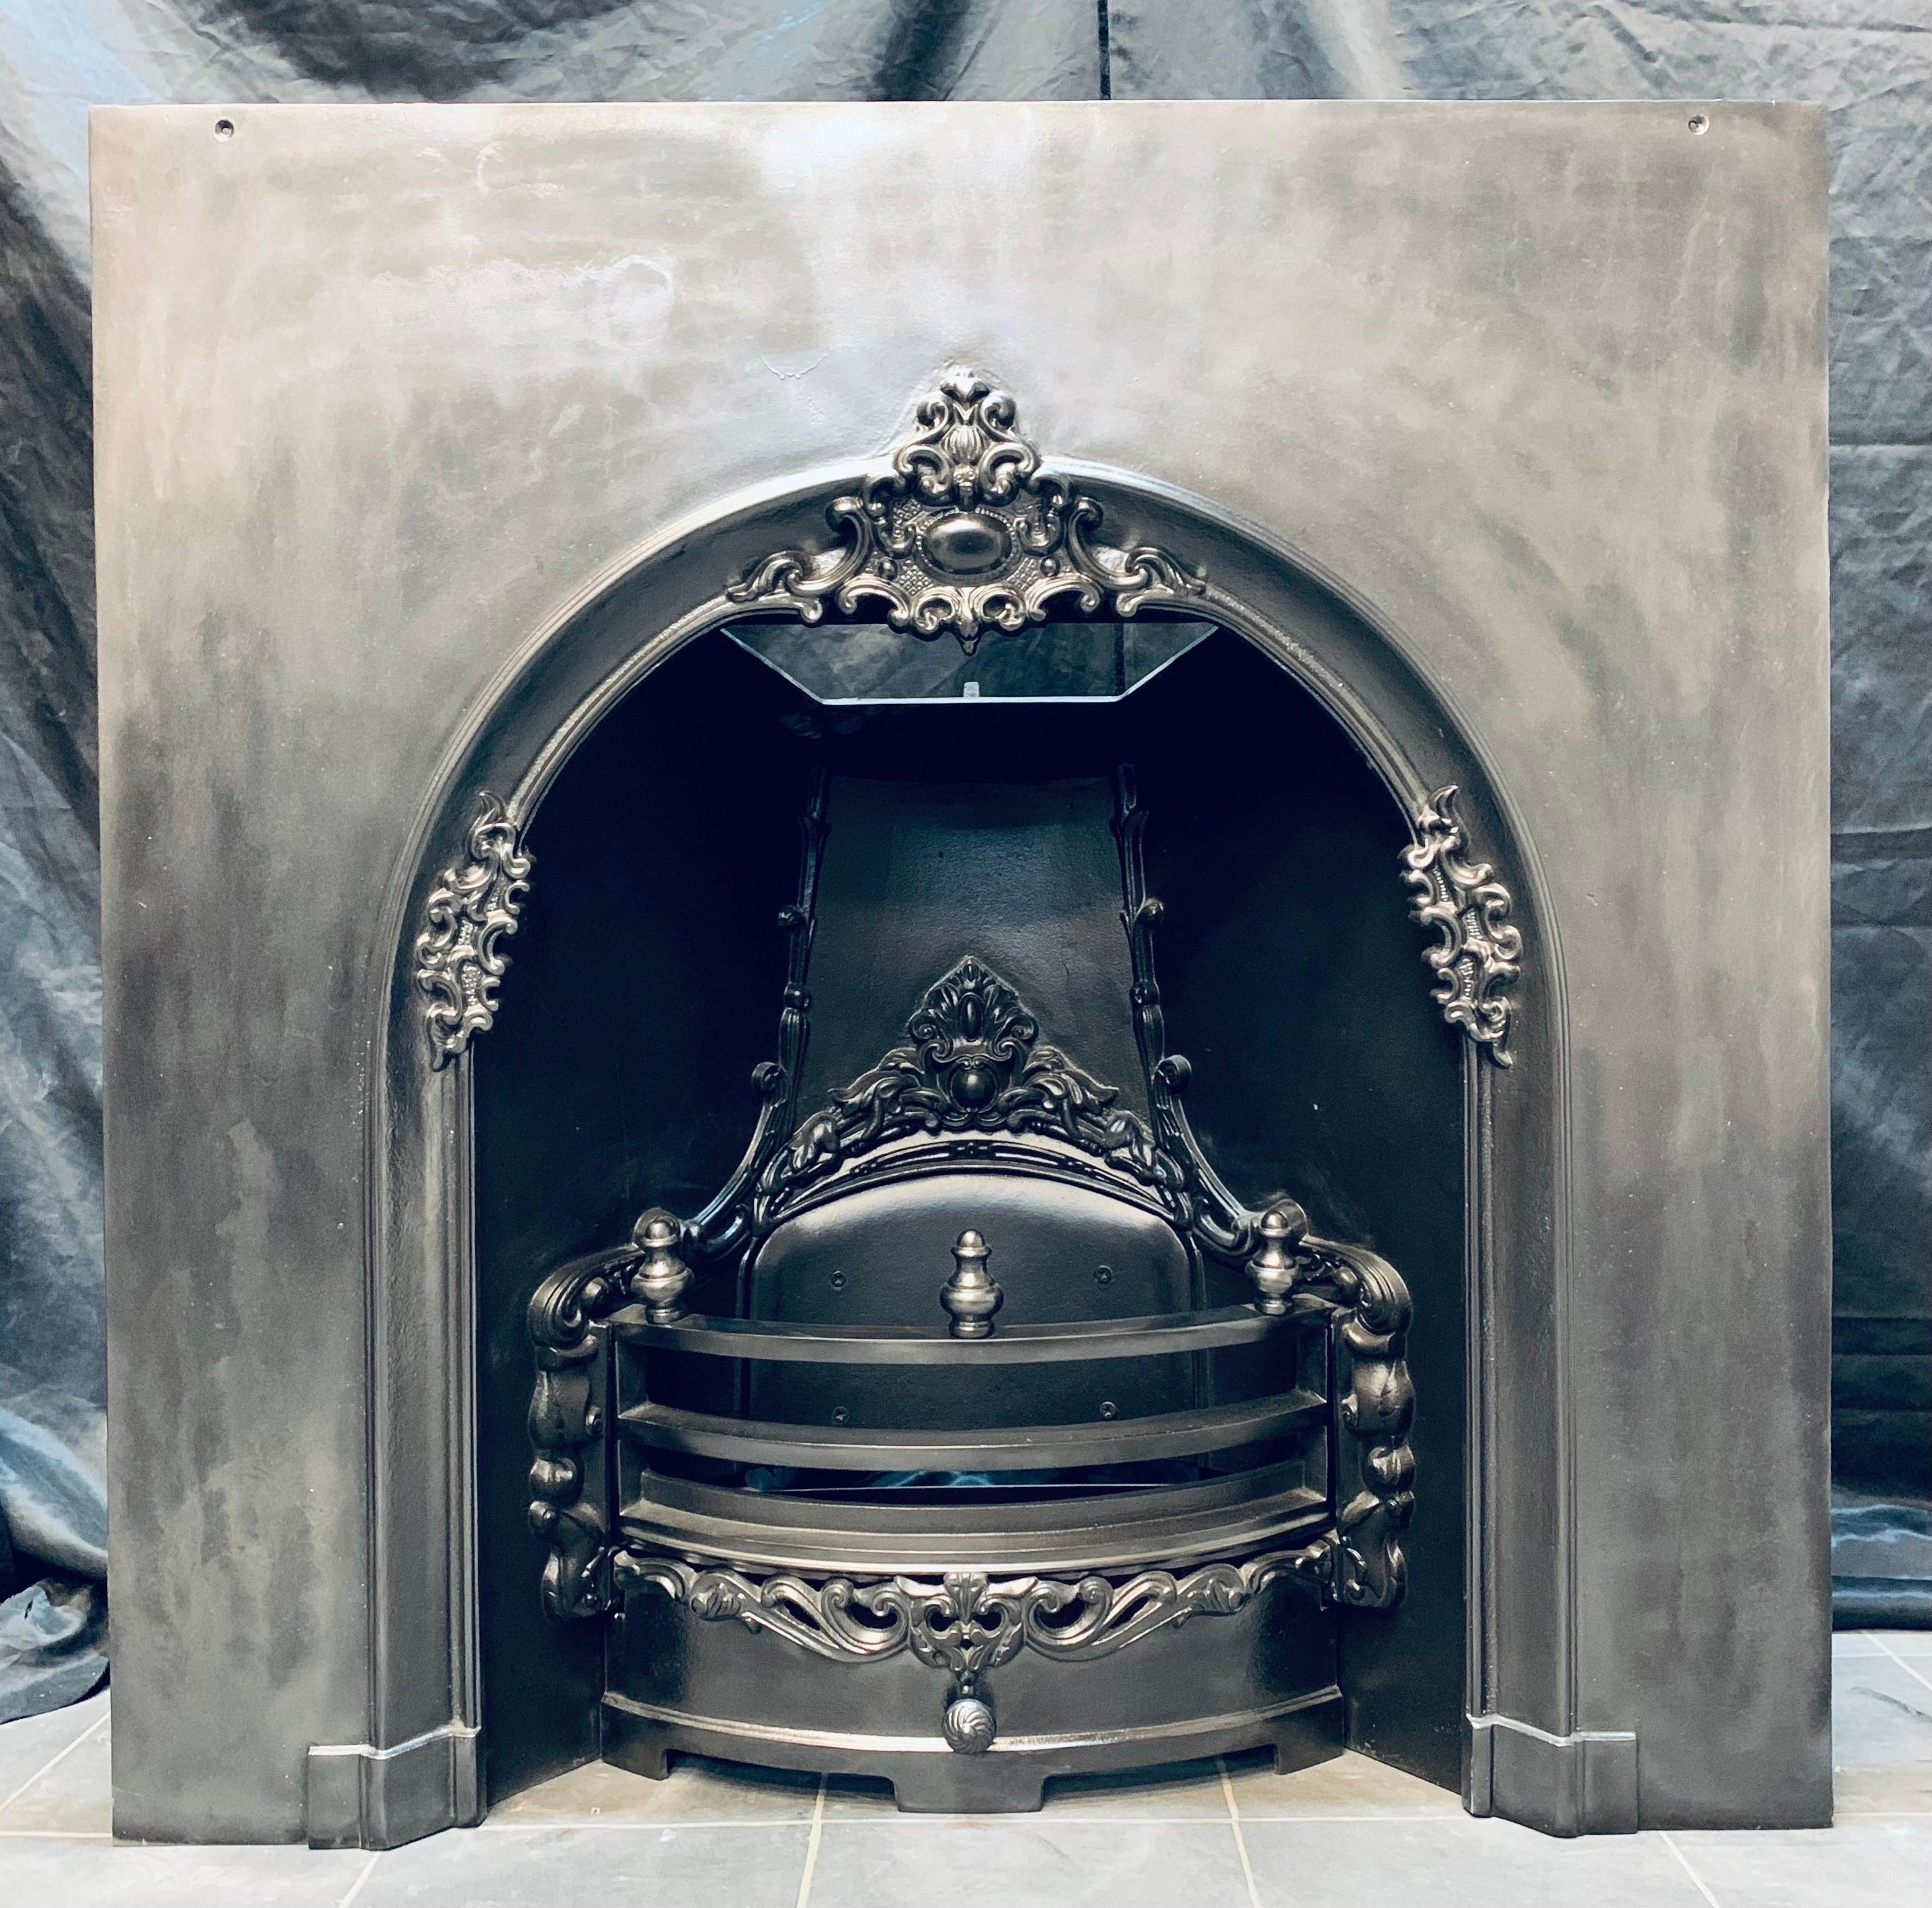 Eine große viktorianischen Stil Gusseisen gewölbt Kamineinsatz mit einem zentralen Hochrelief Kartusche, eine großzügige äußere Platte, komplett mit seinen ursprünglichen Bars und Aschenbecher Tür, gekrönt mit finials und einem Trichter Kammer